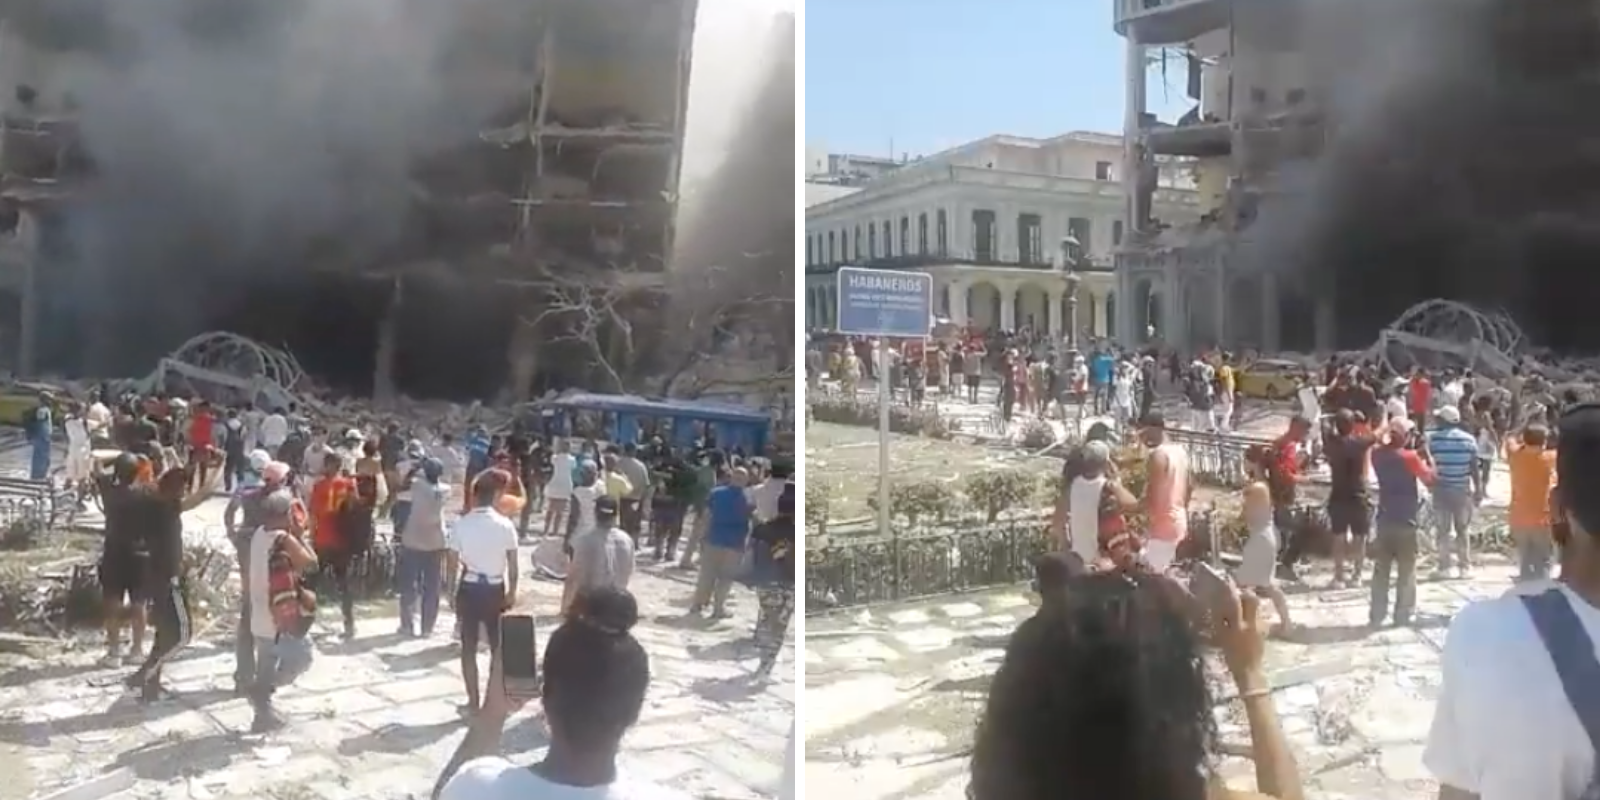 BREAKING: Explosion in Havana, Cuba destroys hotel